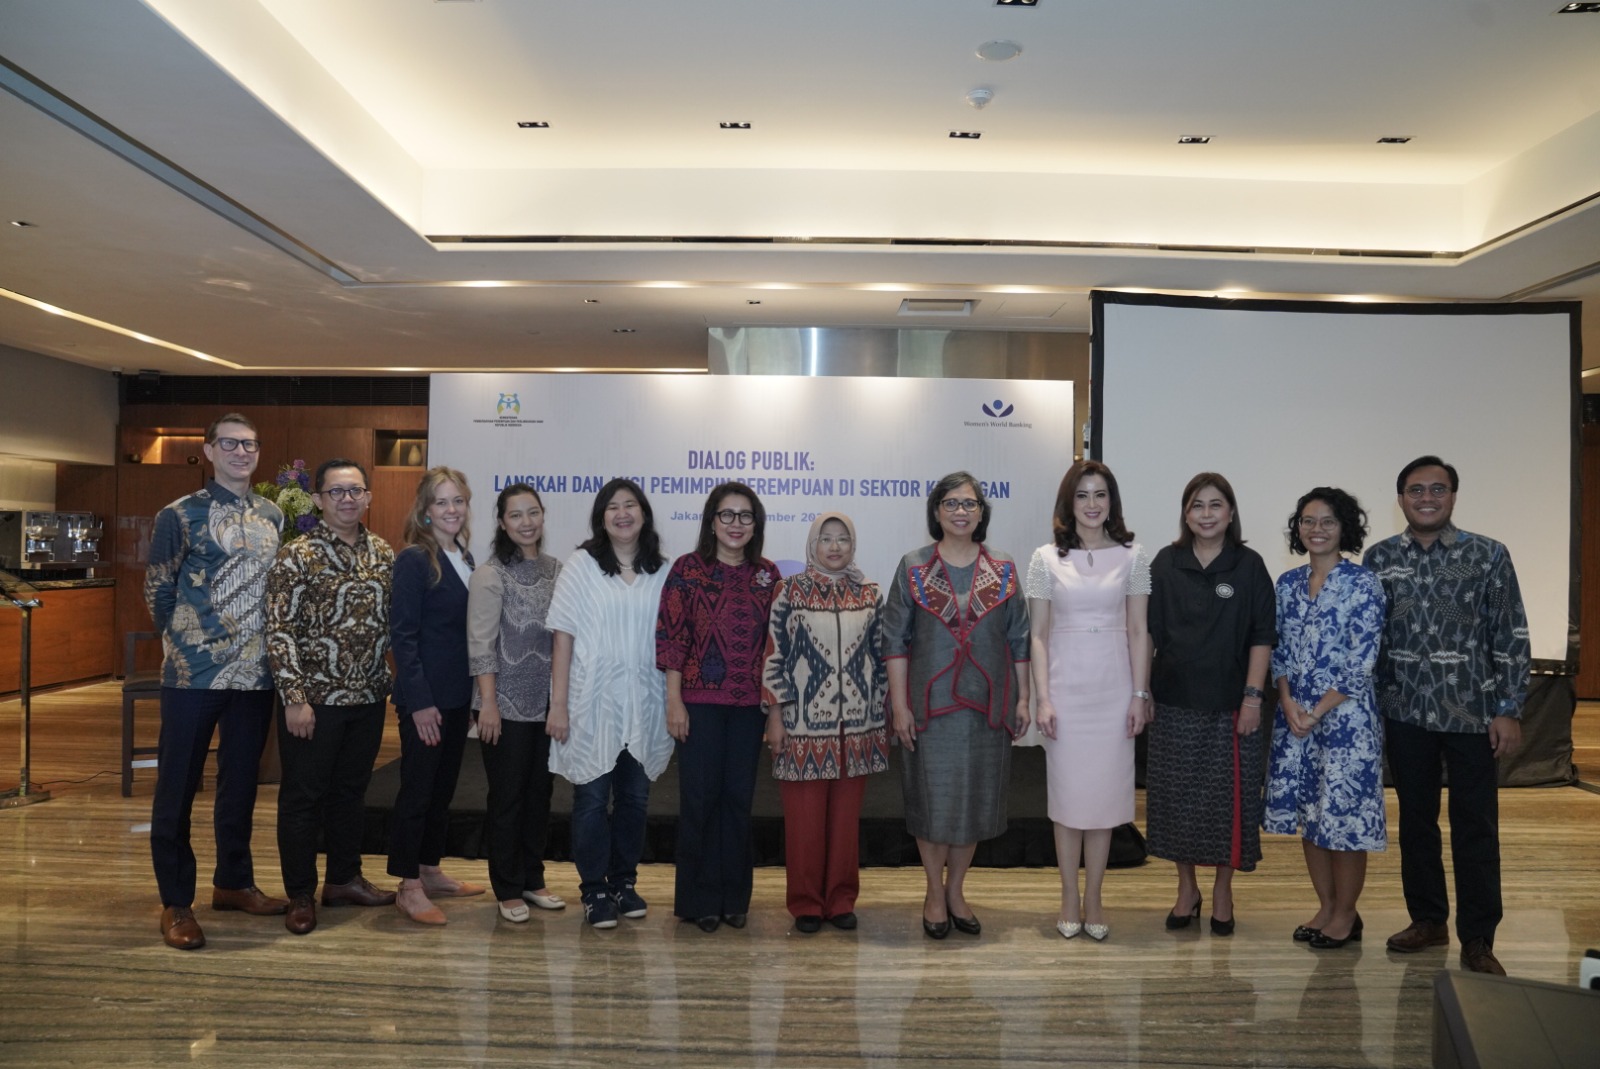 Langkah dan Aksi Kepemimpinan Perempuan di Sektor Keuangan untuk Pertumbuhan Ekonomi